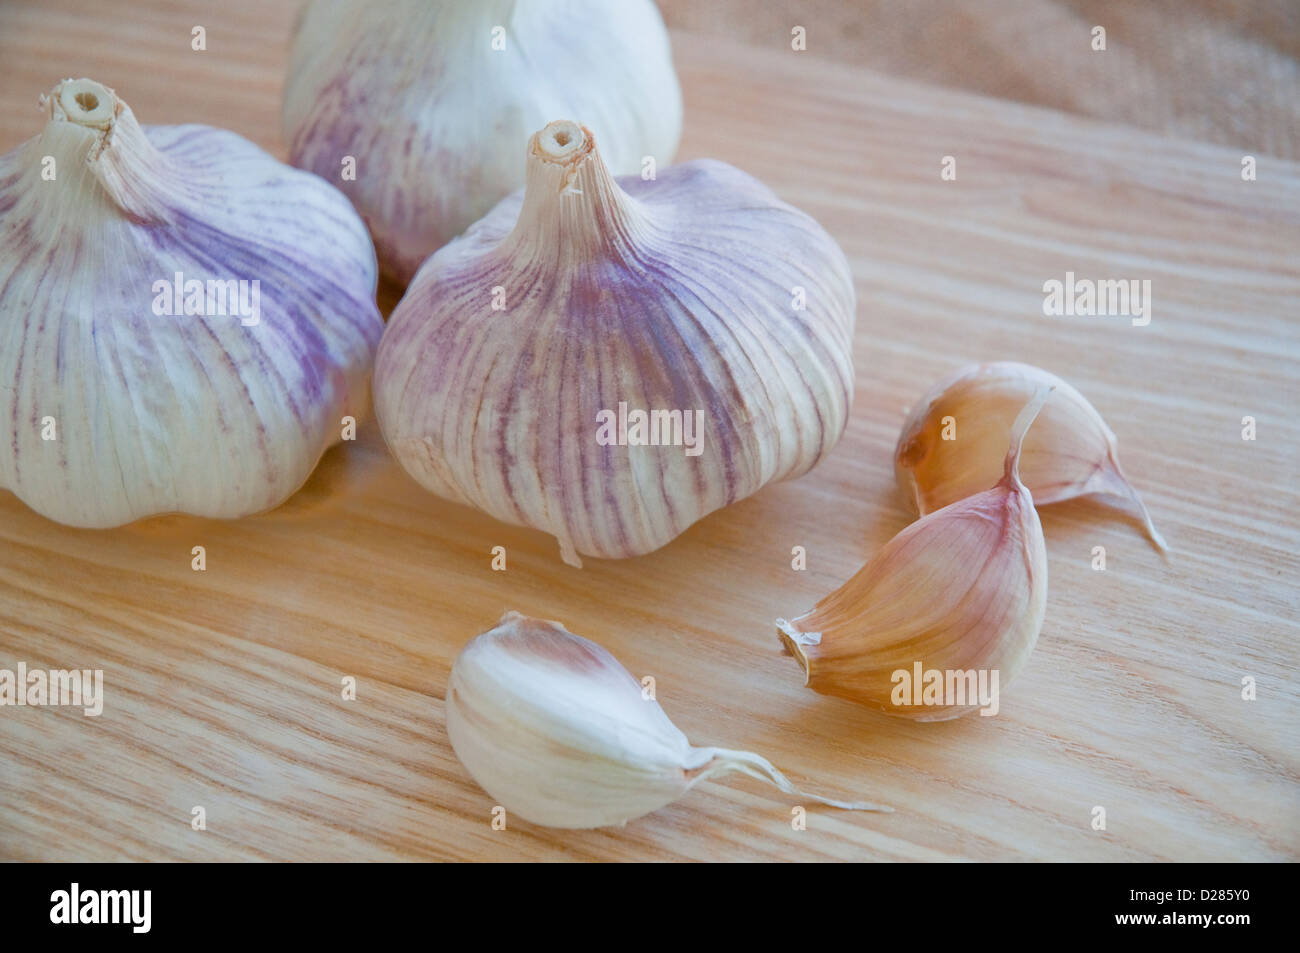 Garlics. Still life. Stock Photo